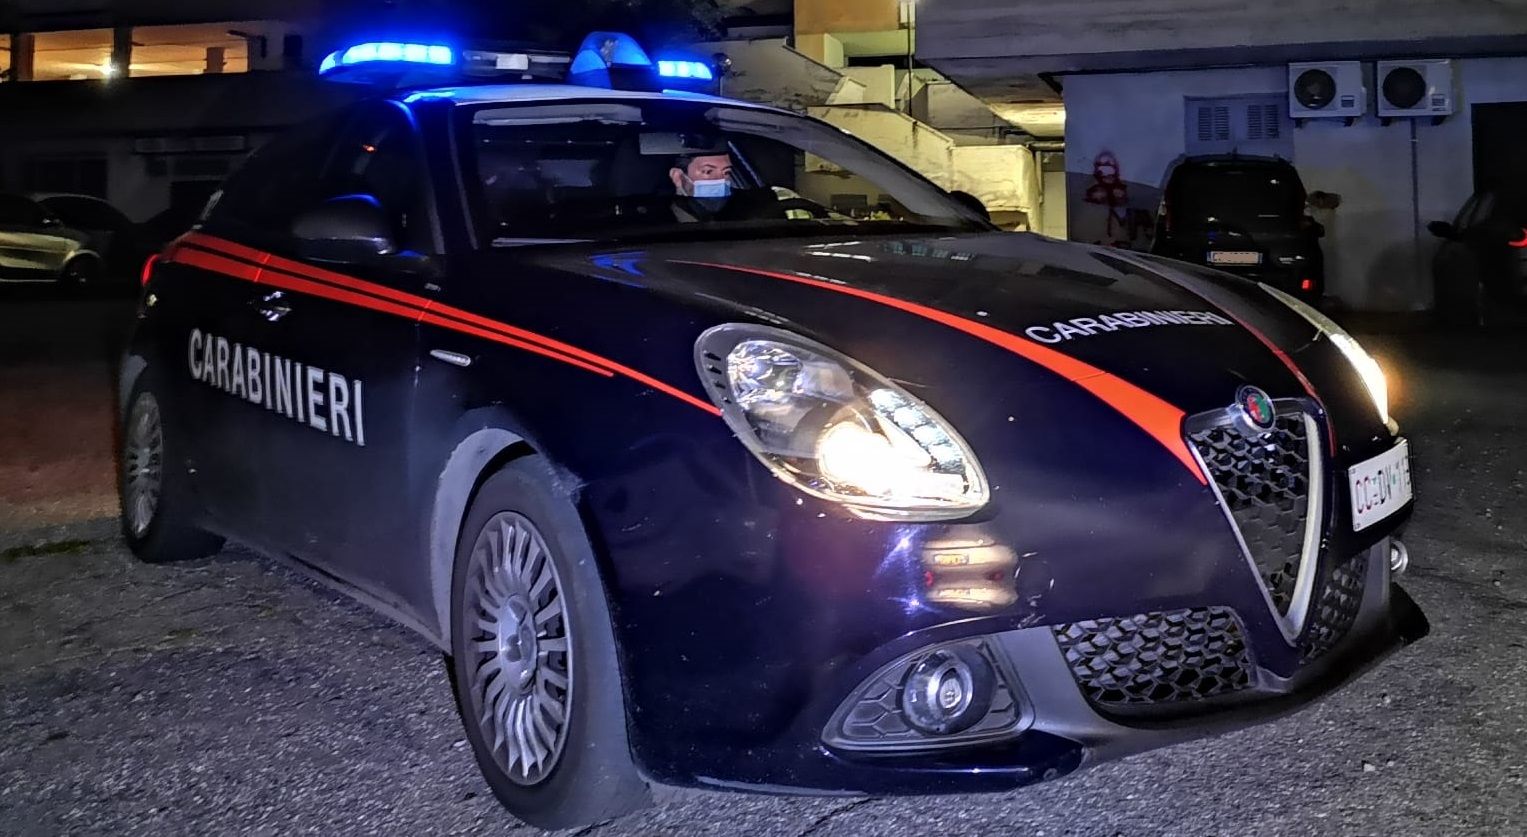 Tentato furto in abitazione, intervento dei Carabinieri